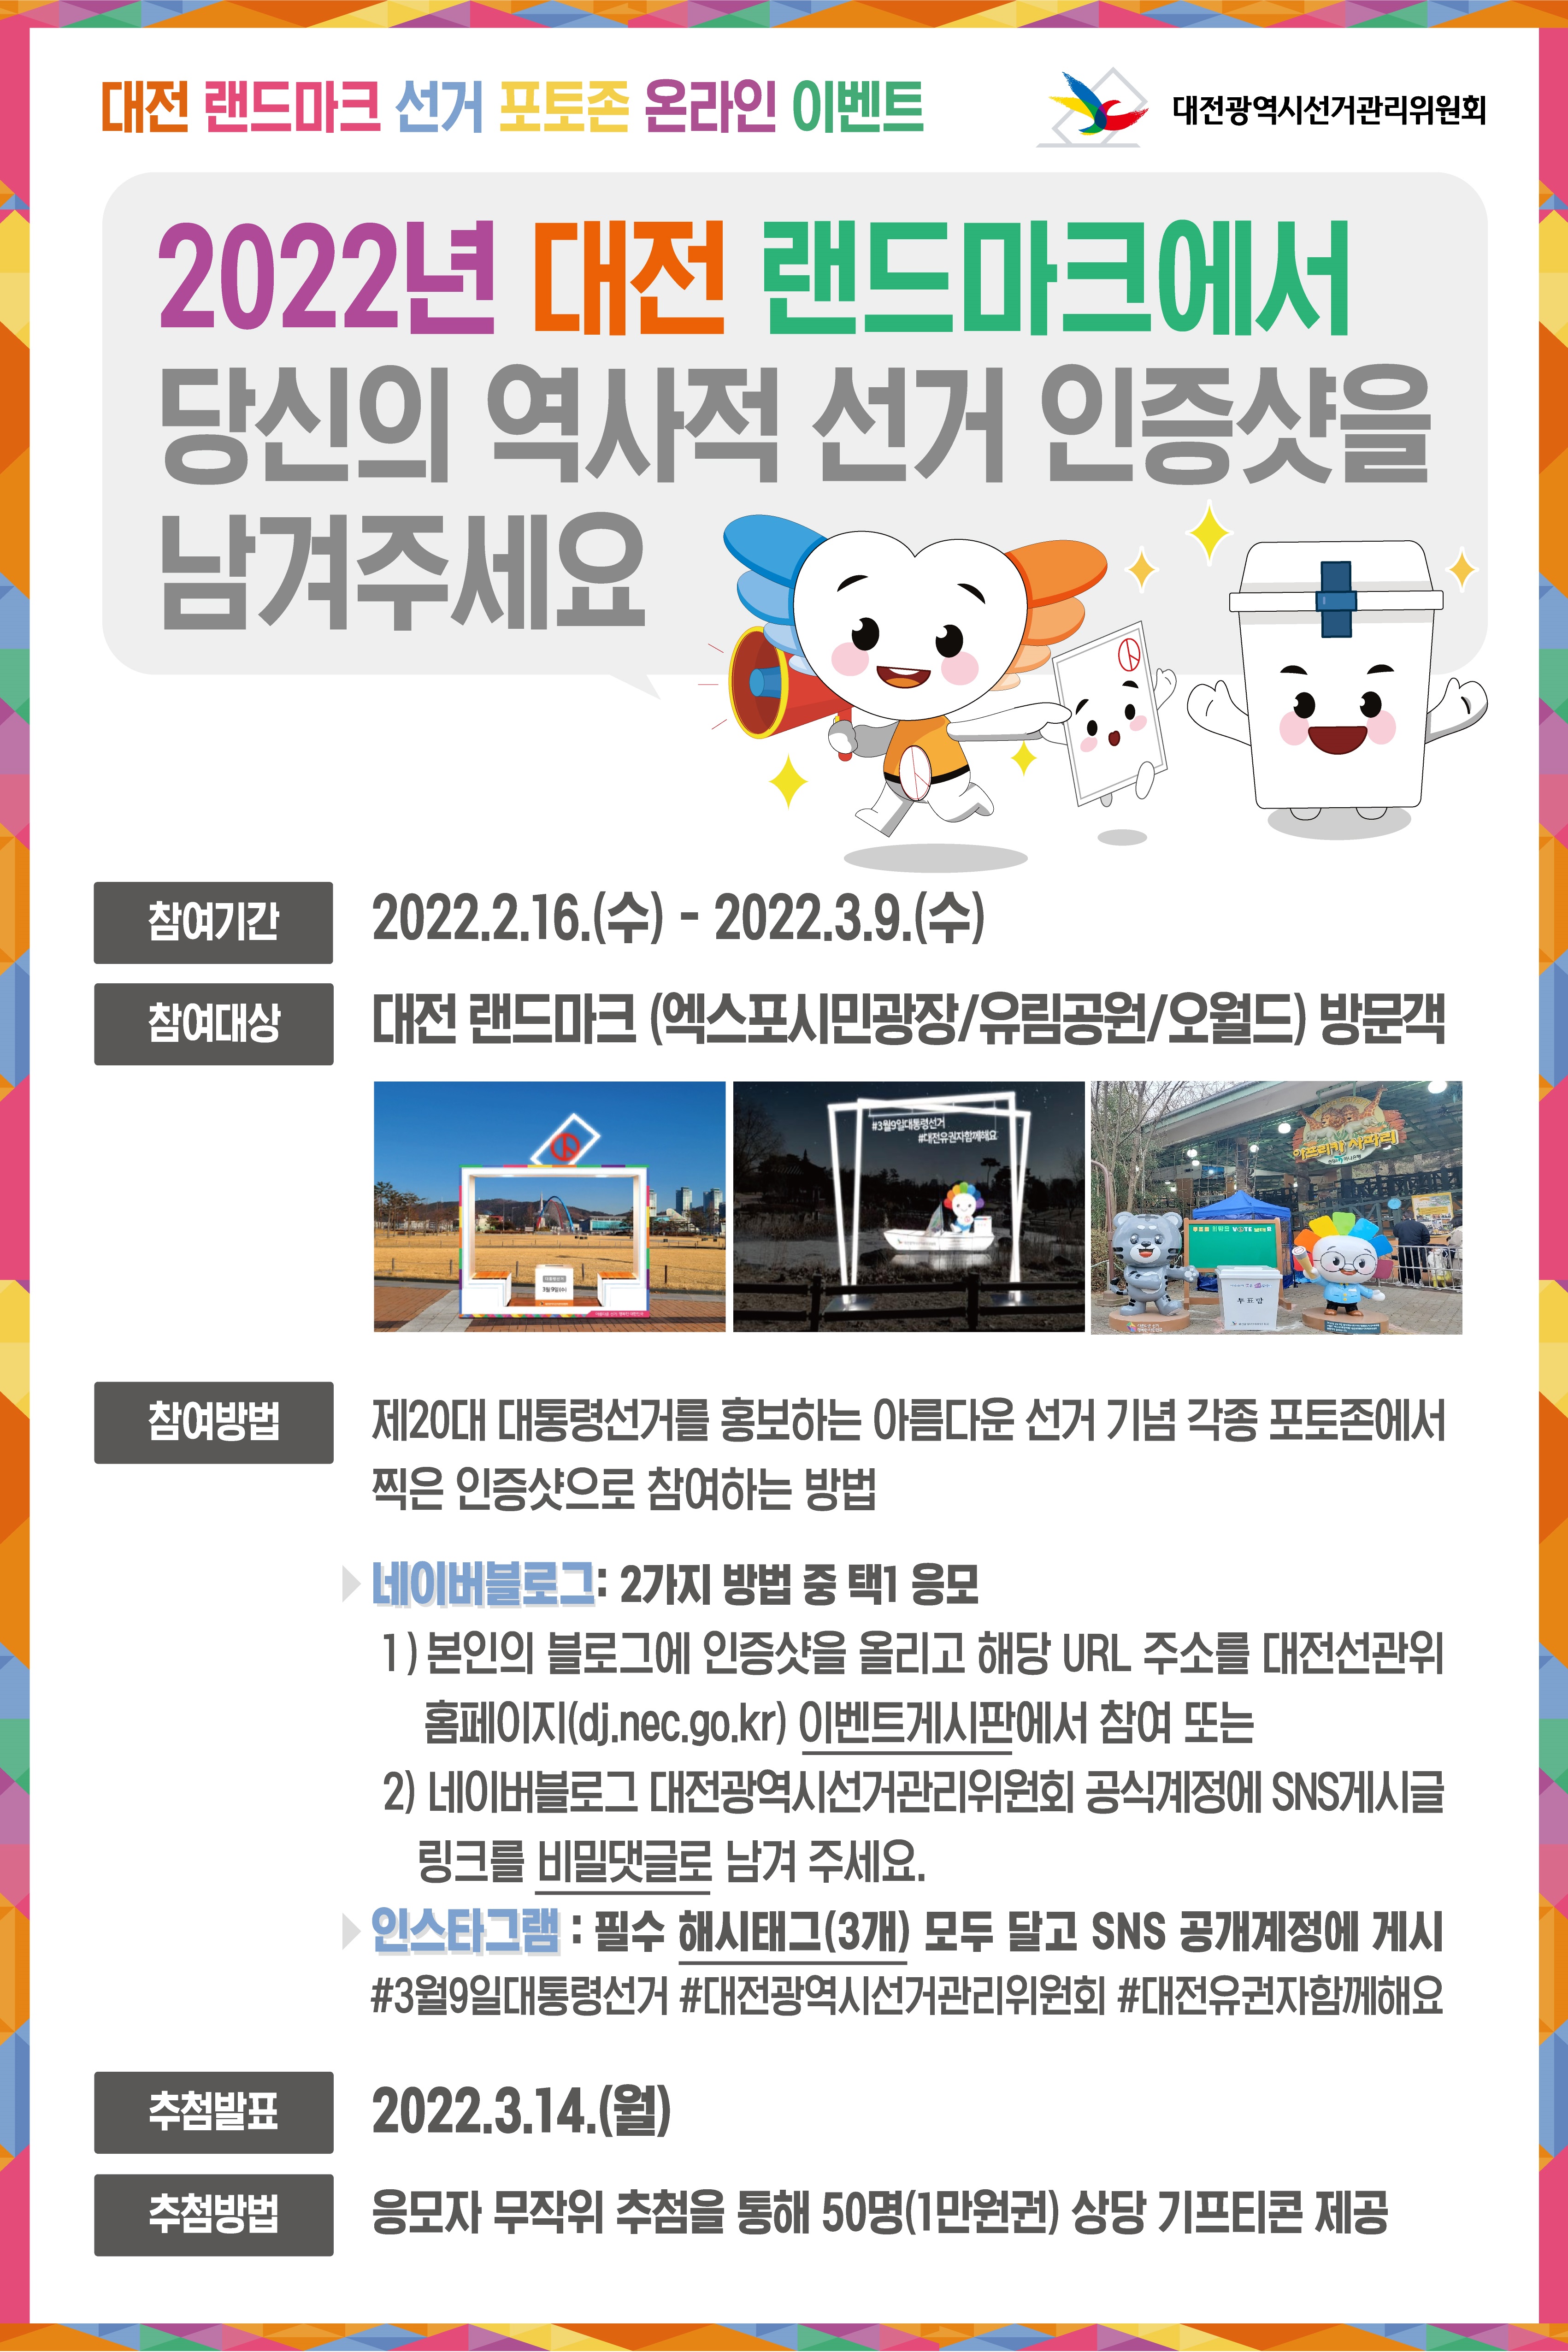 대전 랜드마크 선거 포토존 온라인 이벤트 상세내용 하단참조